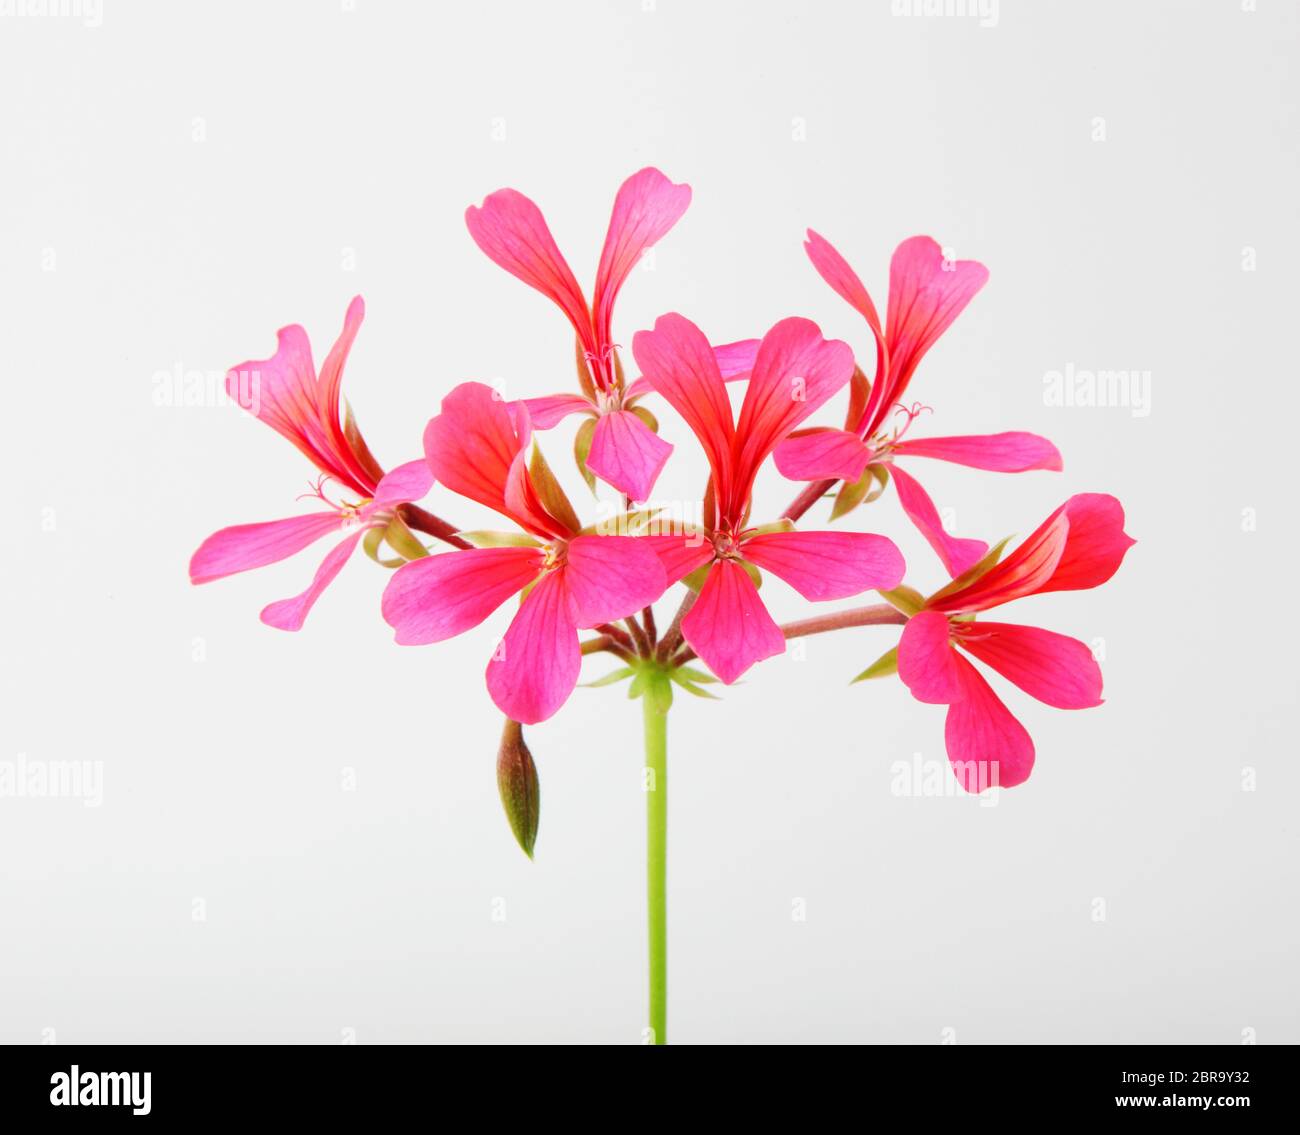 Geranium Pelargonium Flowers Isolated On White Background Stock Photo